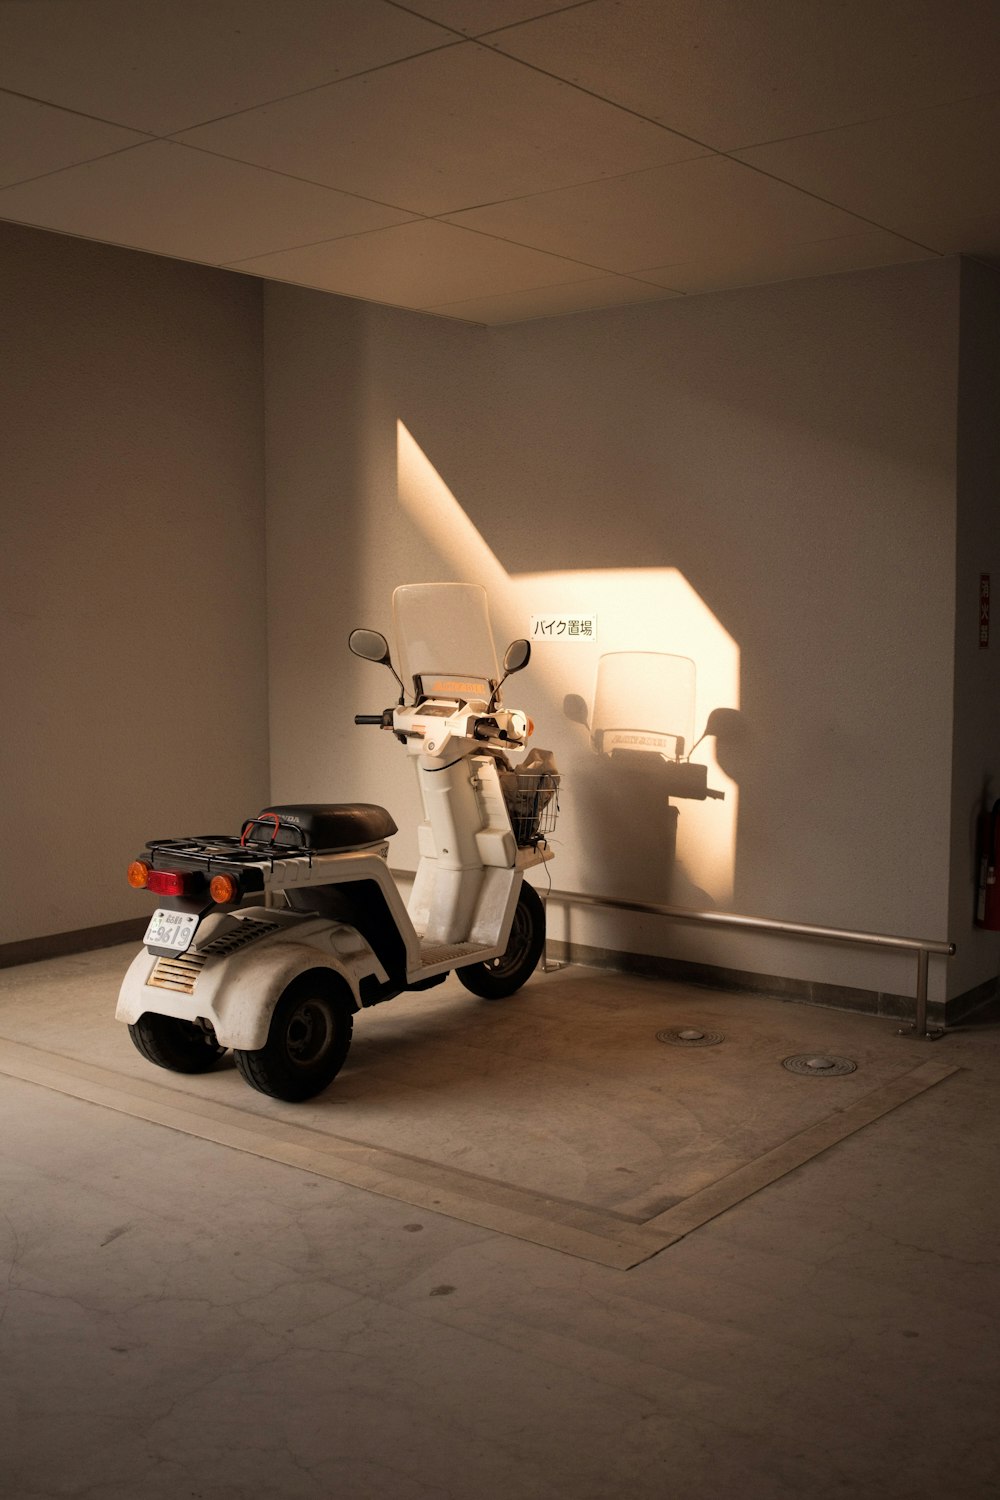 scooter bianco e nero parcheggiato accanto al muro bianco